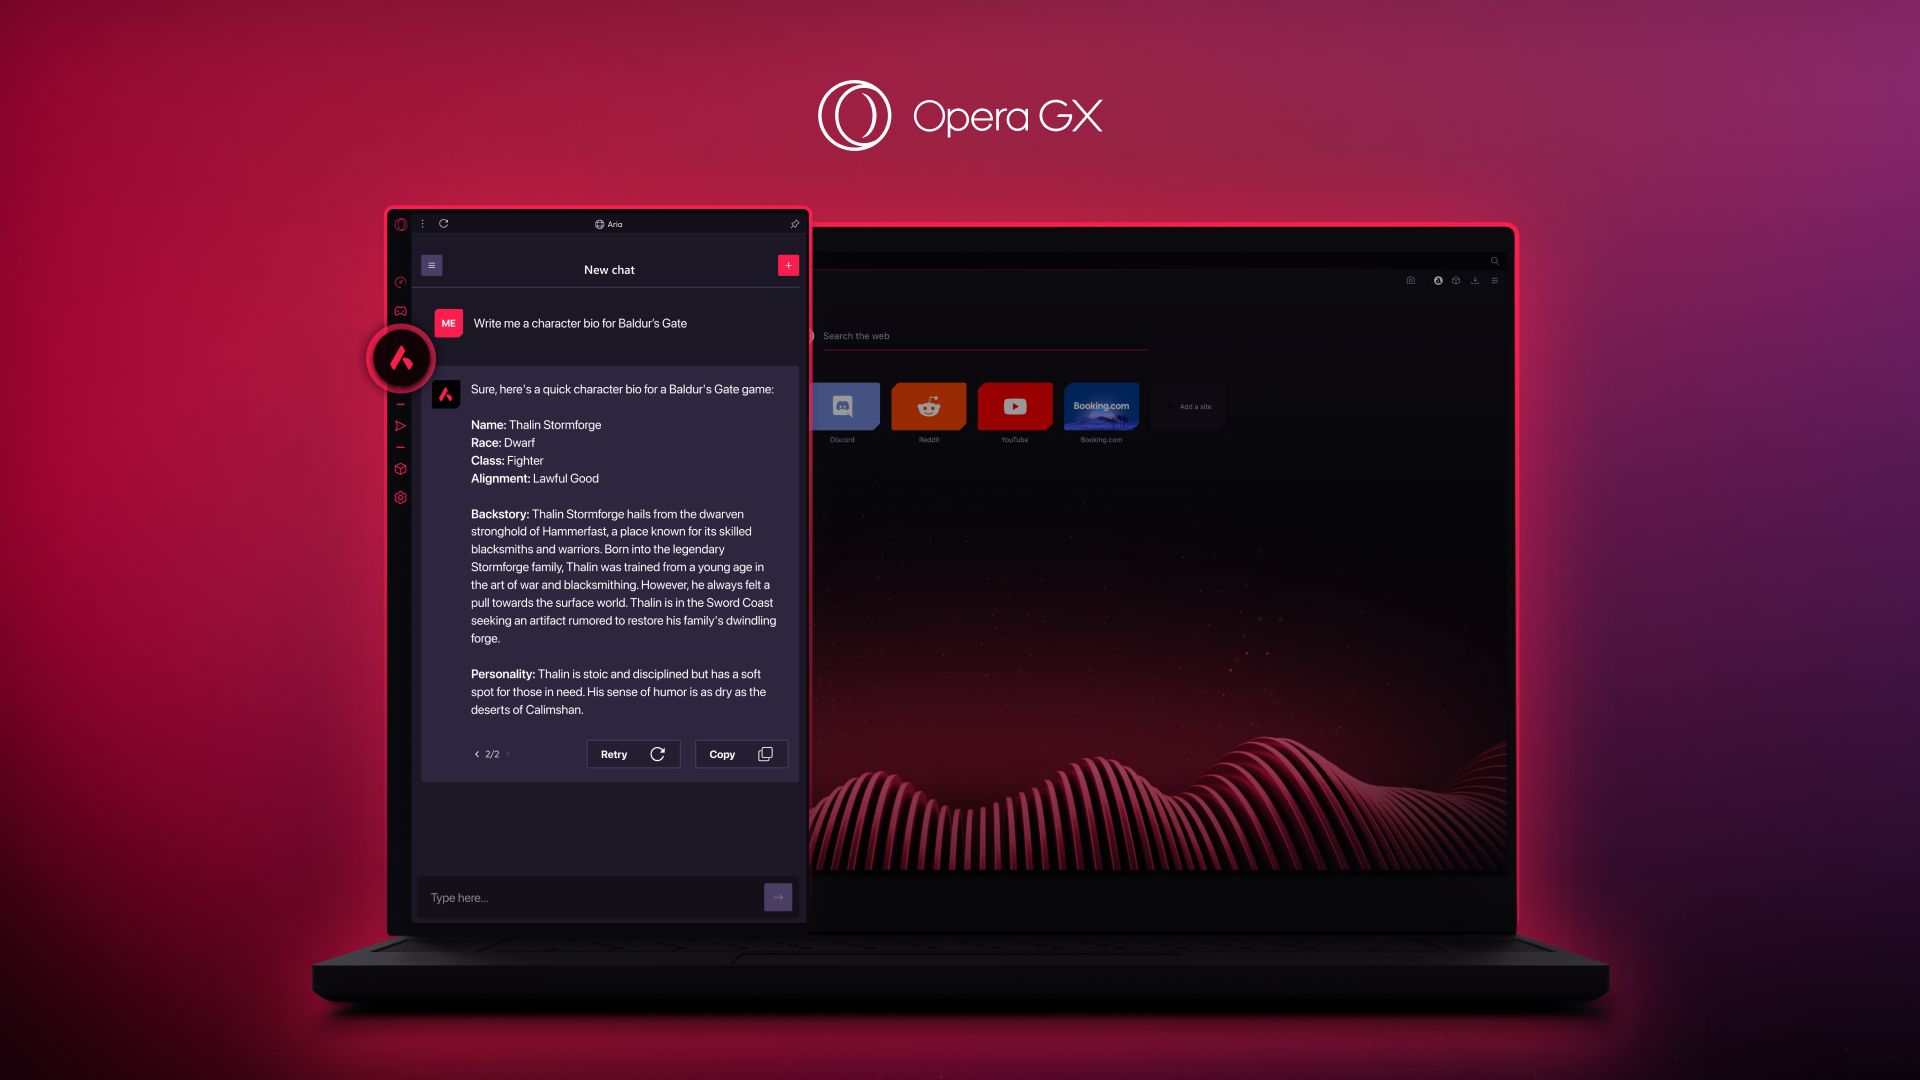 Navegador Opera GX lança 'botão de pânico' para visitas inesperadas